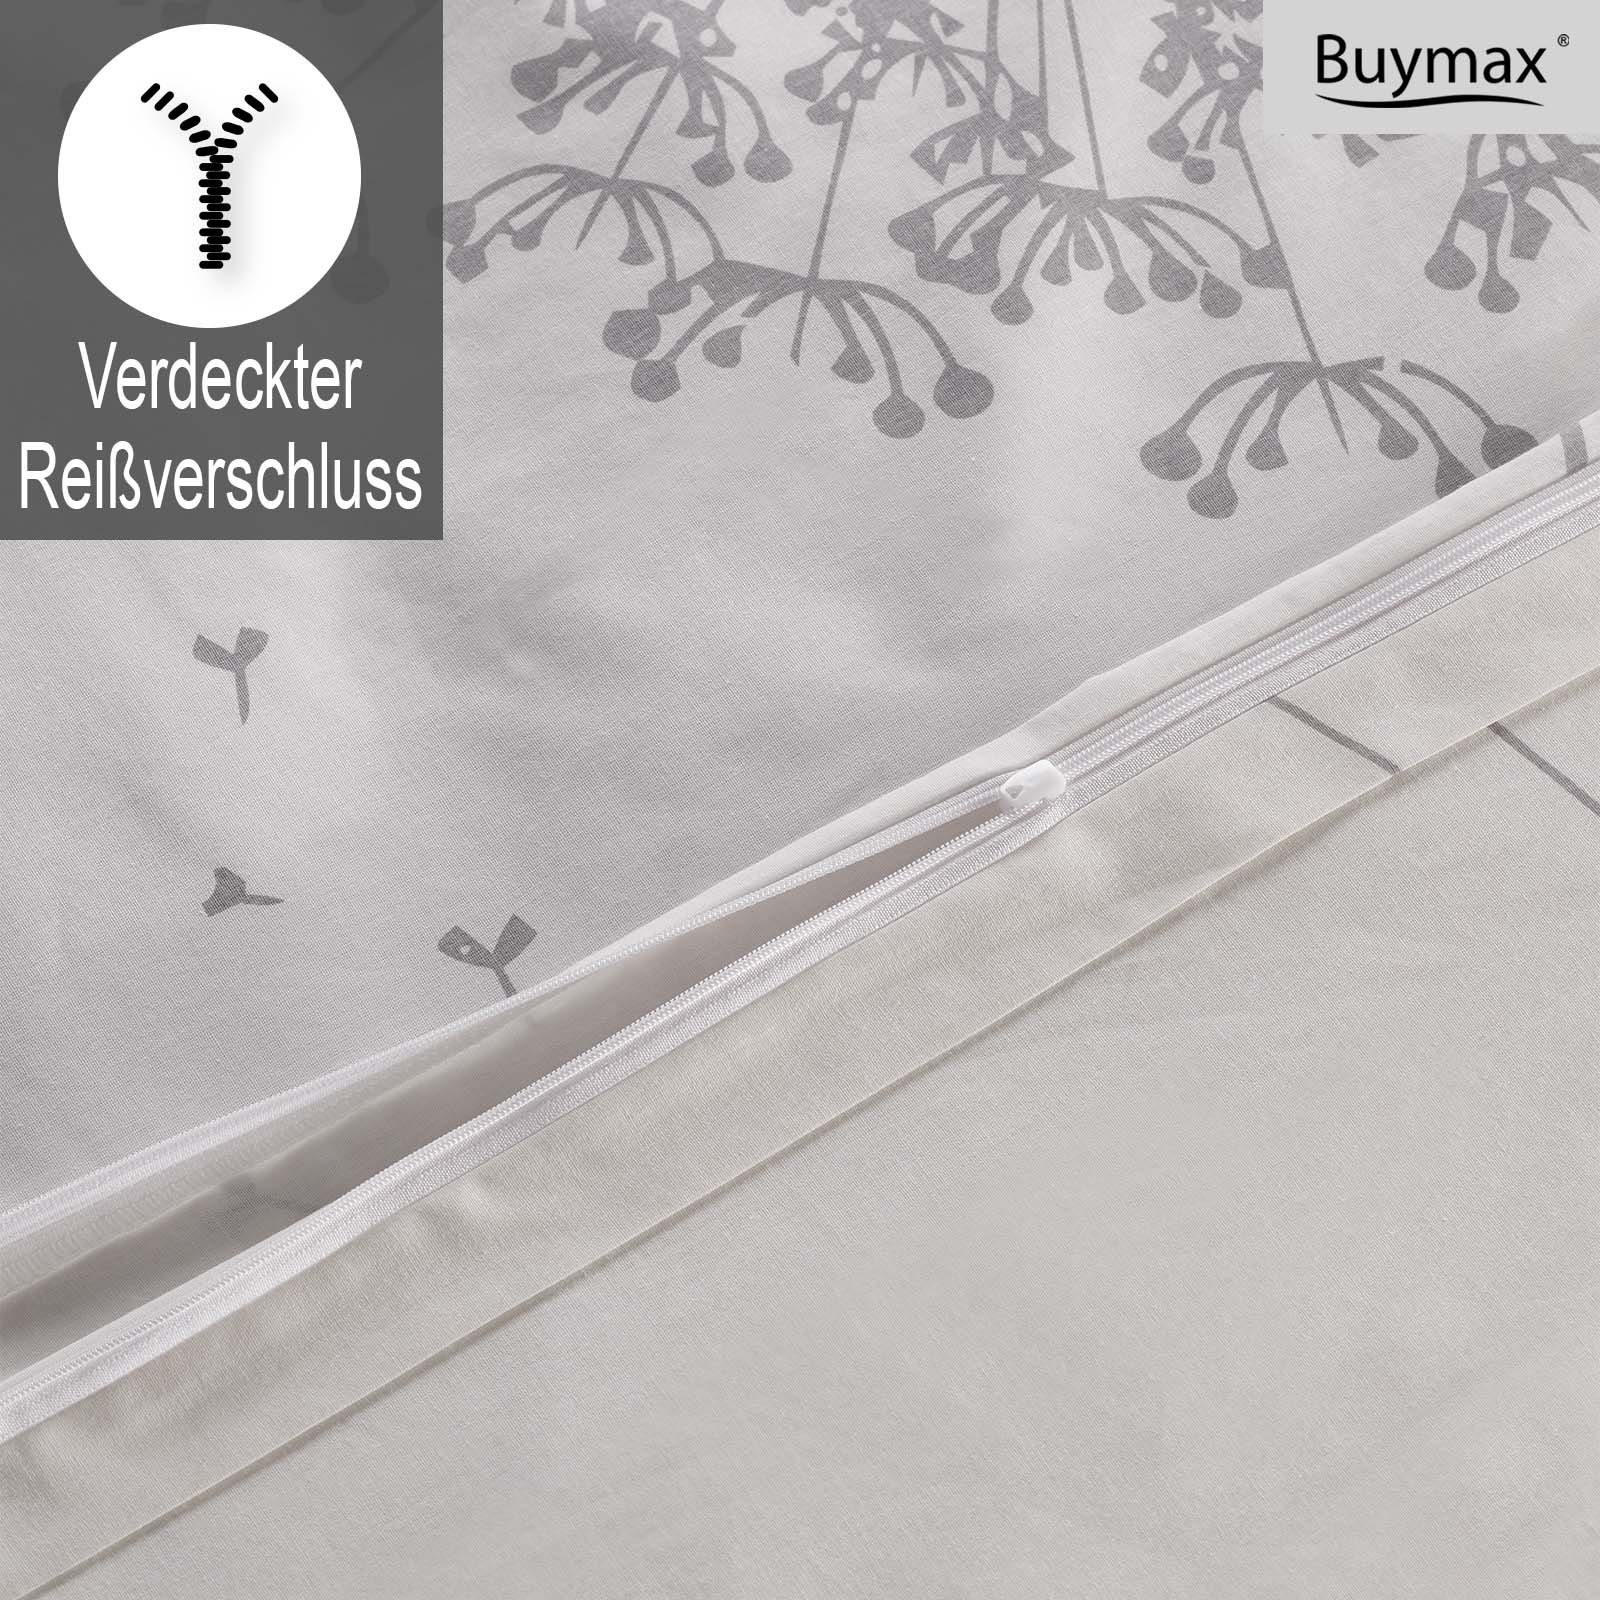 Weiß-Grau 2 Kissenbezug Blätter, cm Blumen Bettwäsche, Reißverschluss Buymax, Weiß teilig, mit Baumwolle 100% Grau 80x80 Renforcé, Renforce